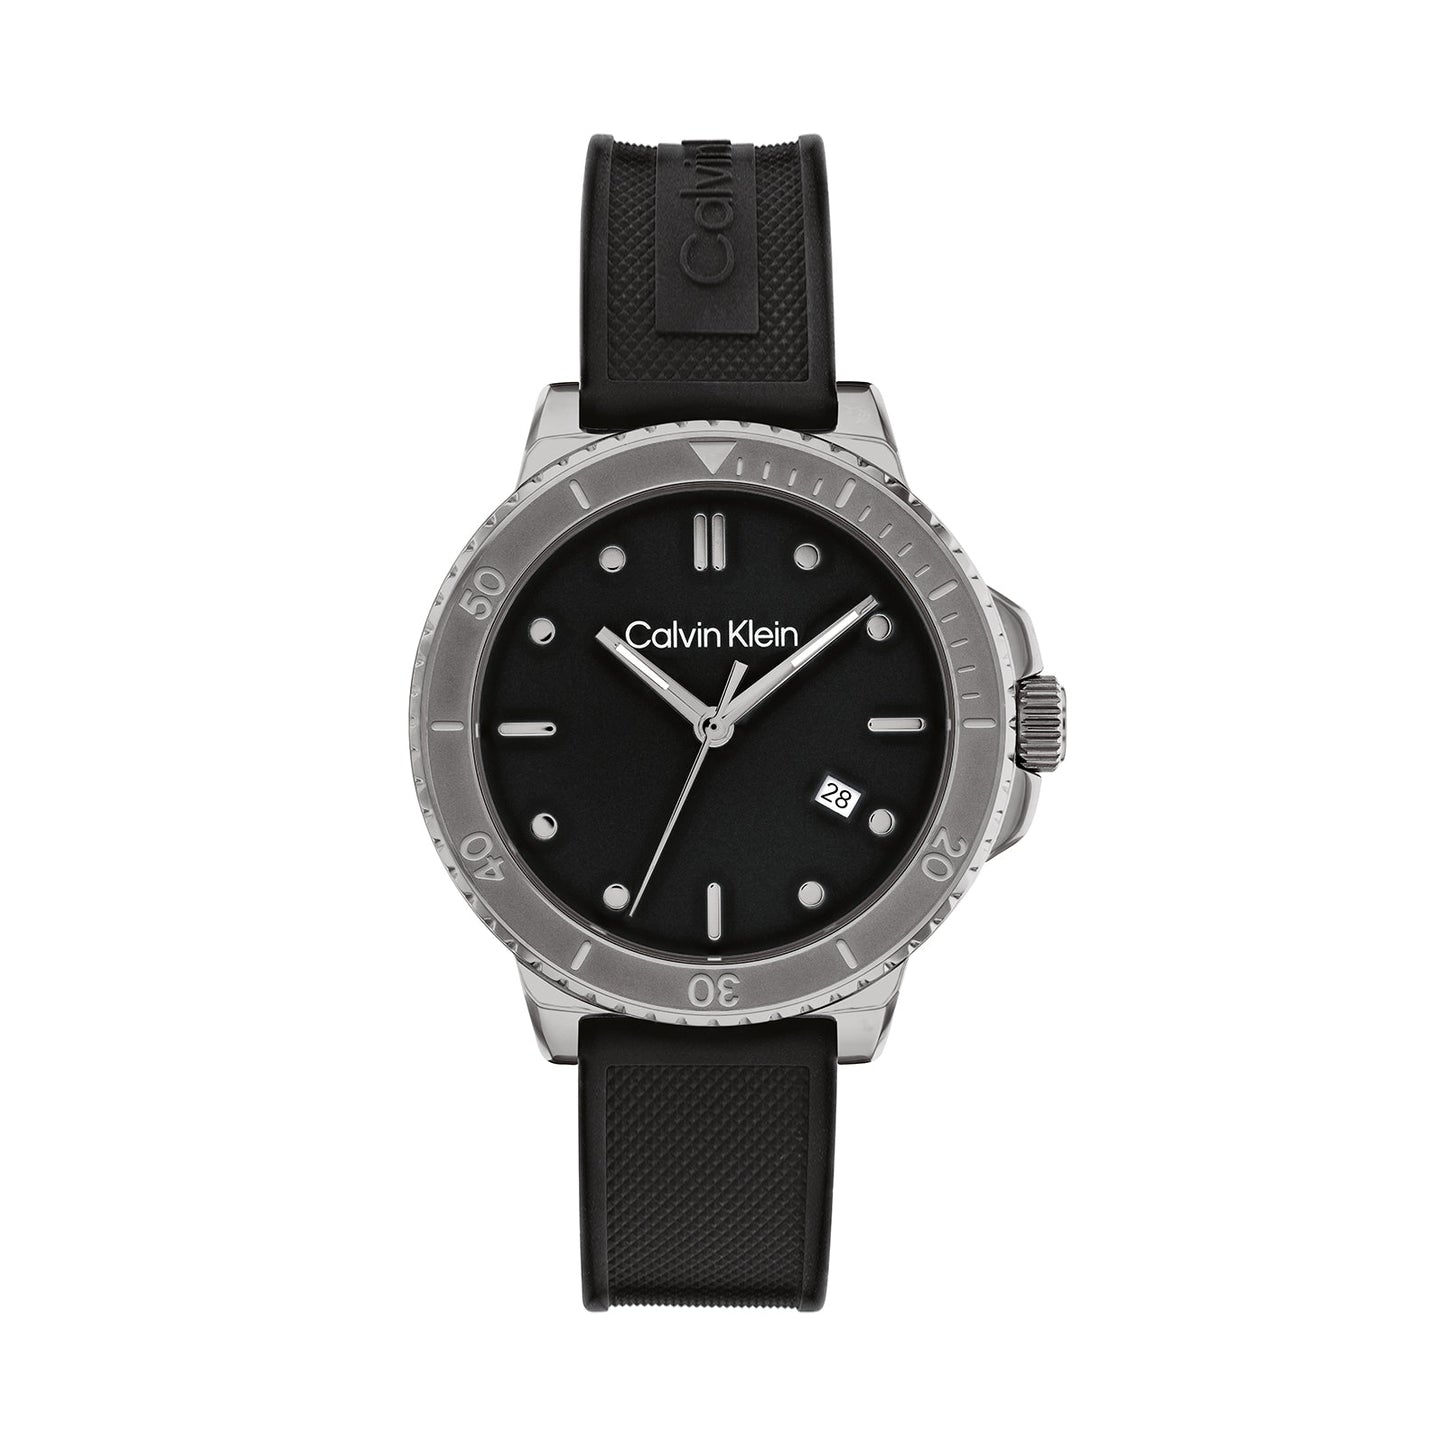 Calvin Klein 25200207 Men's Silicone Watch